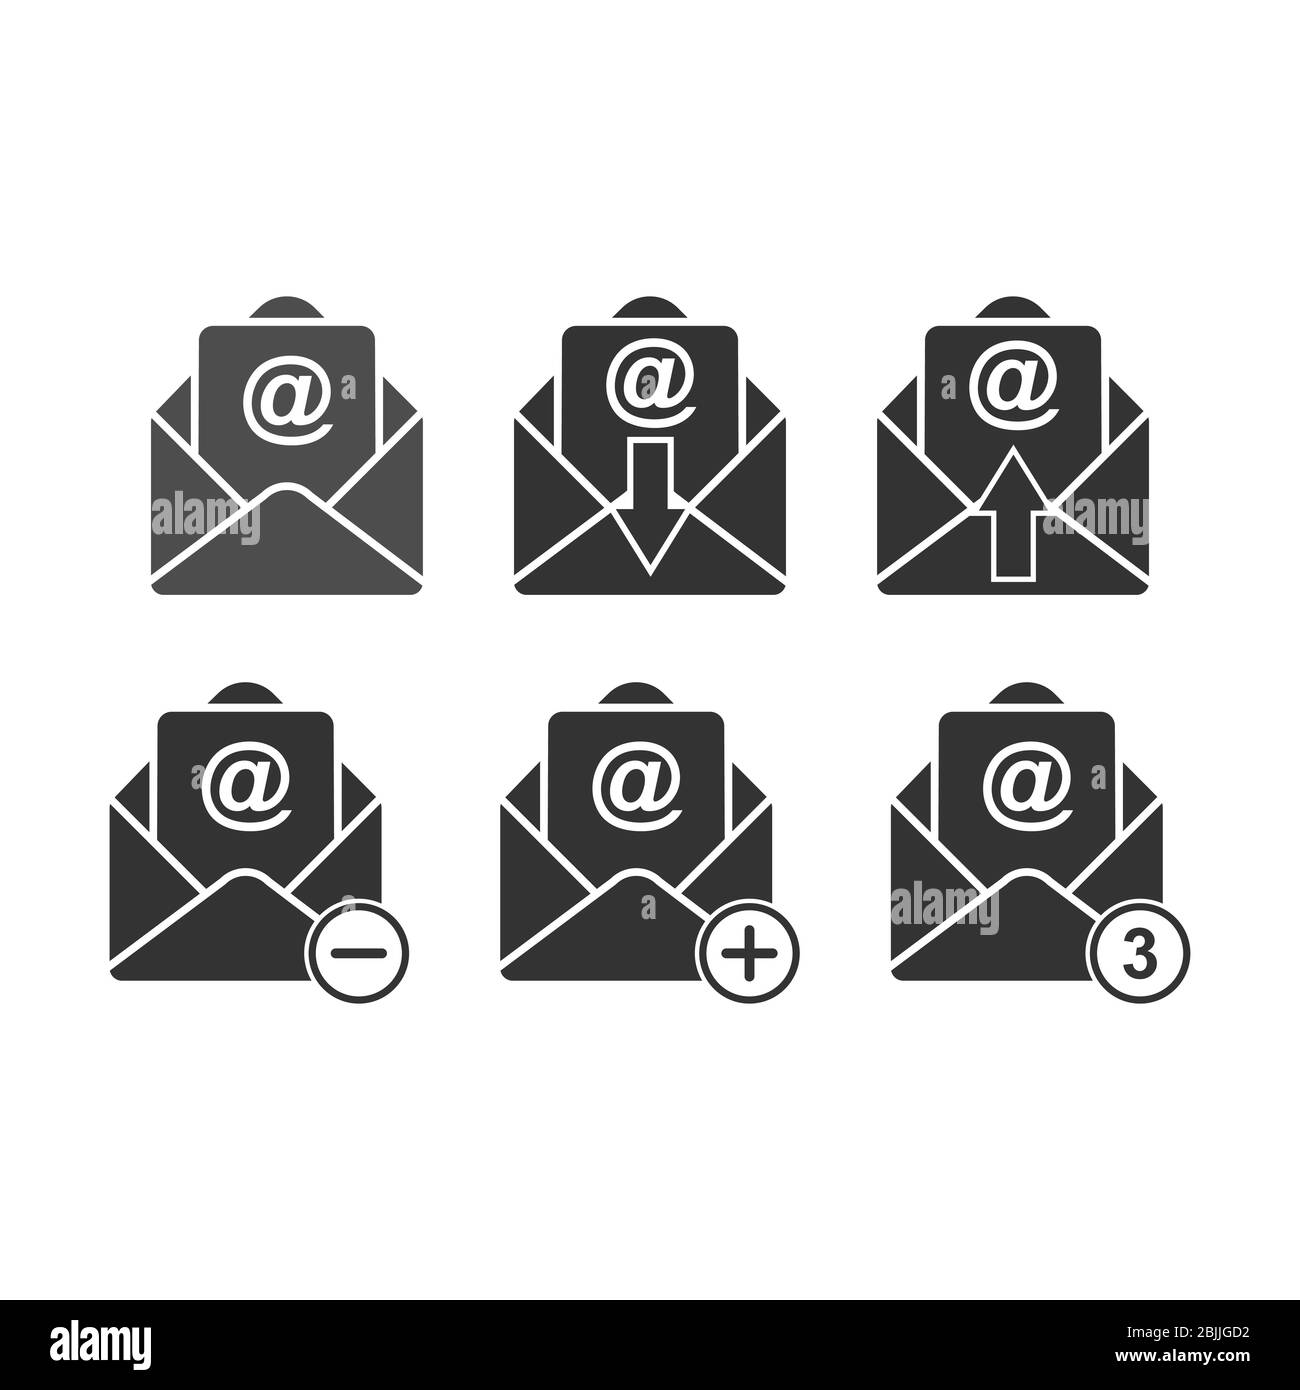 Satz von Vektor-E-Mail-Symbolen. Stock Illustration einer Silhouette isoliert auf einem weißen Hintergrund. Einfaches Design Stock Vektor